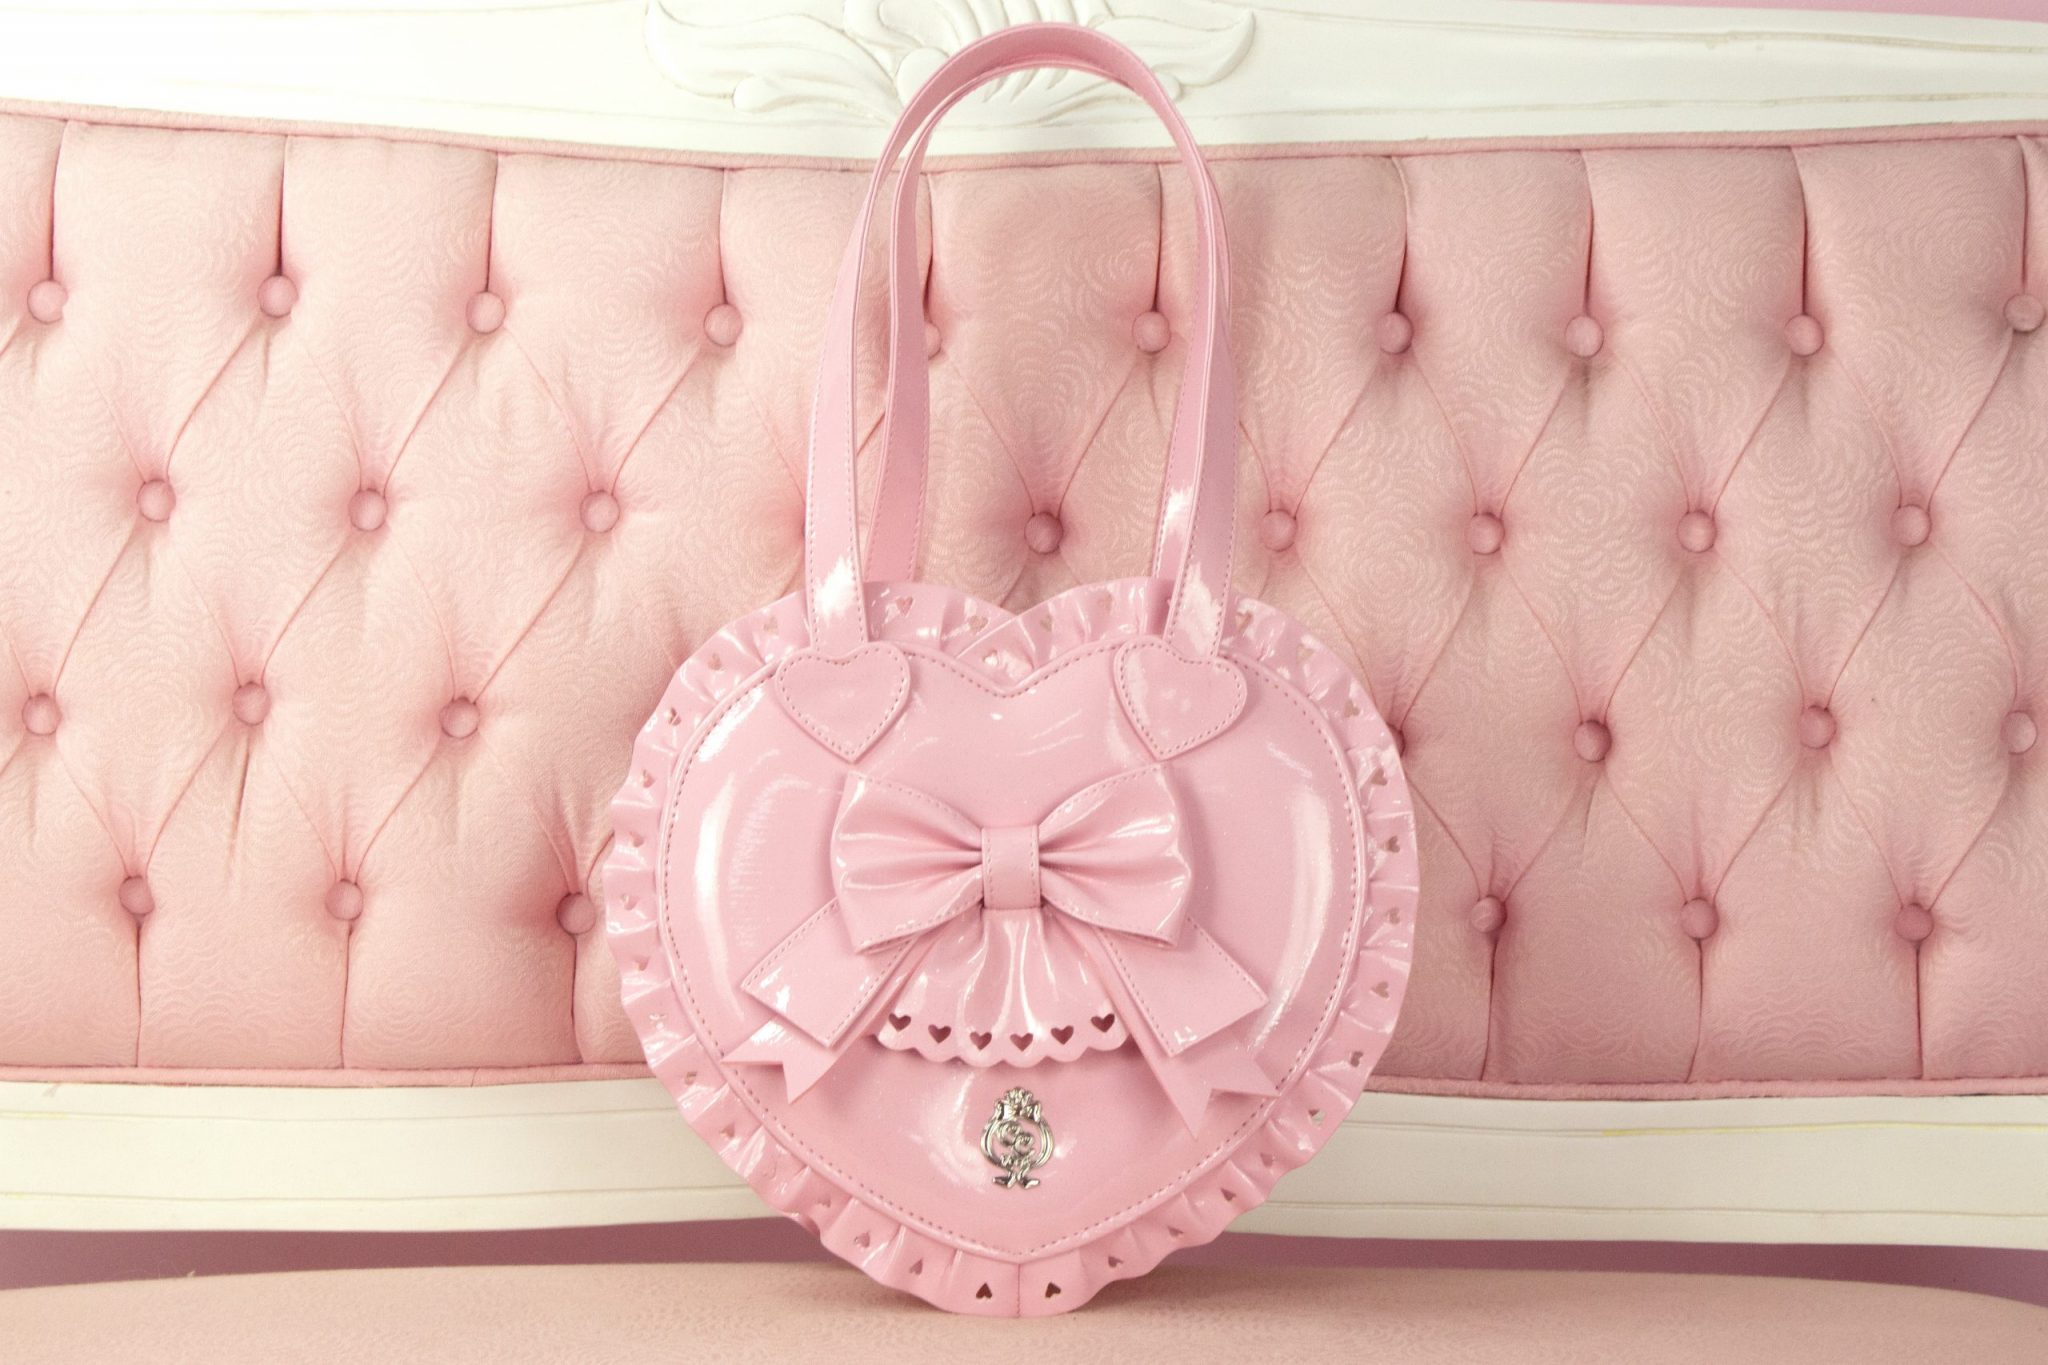 Handbag - Light pink/heart - Ladies